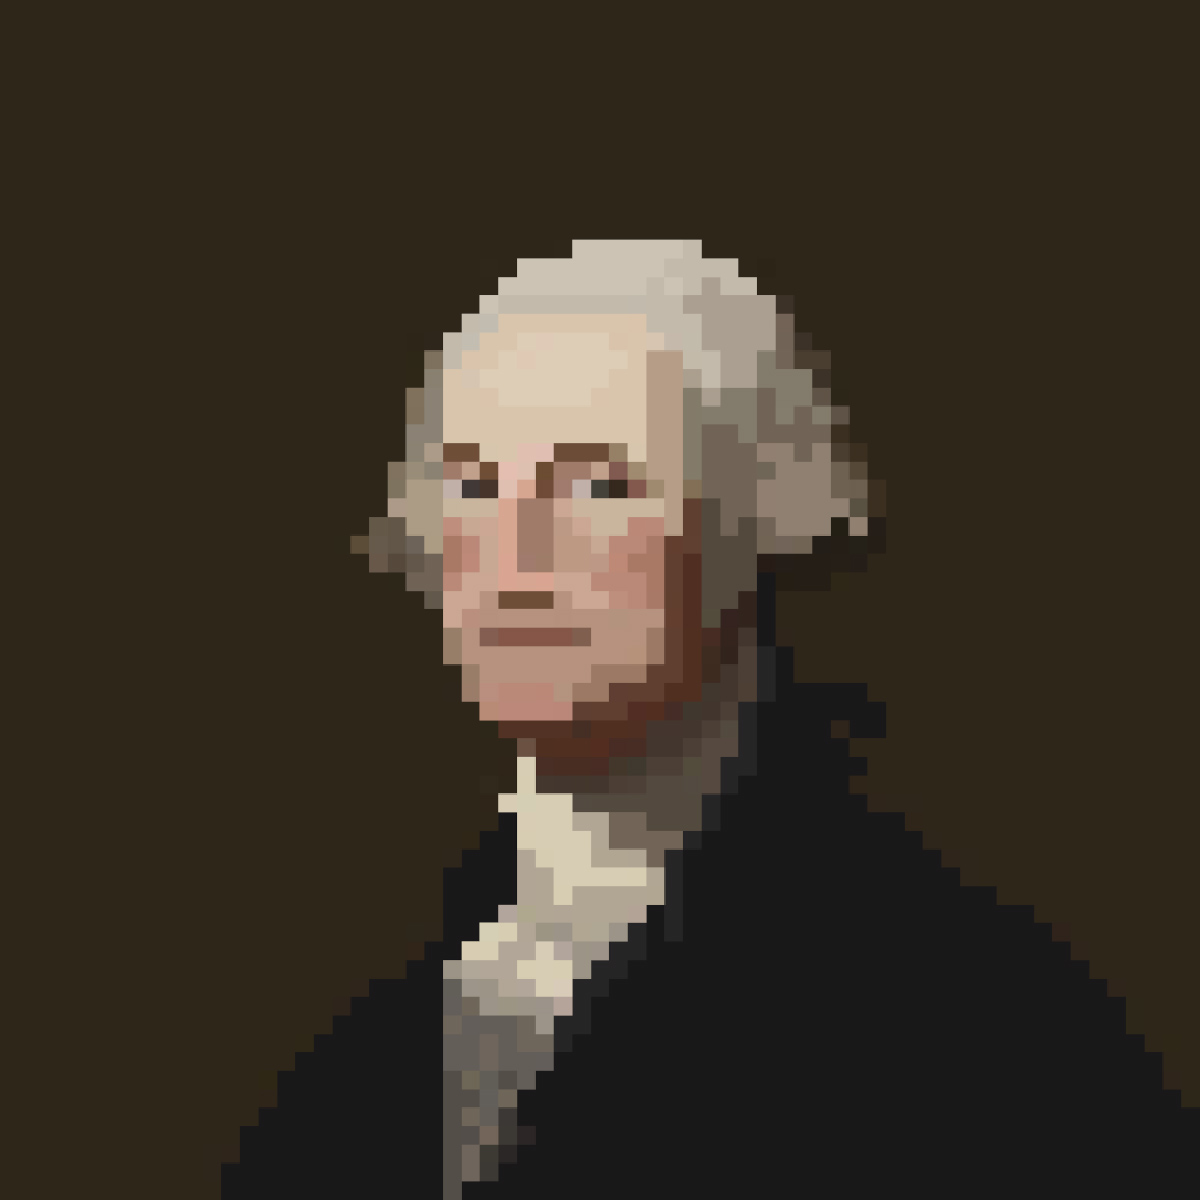 George Washington's Modesty by Artchemy